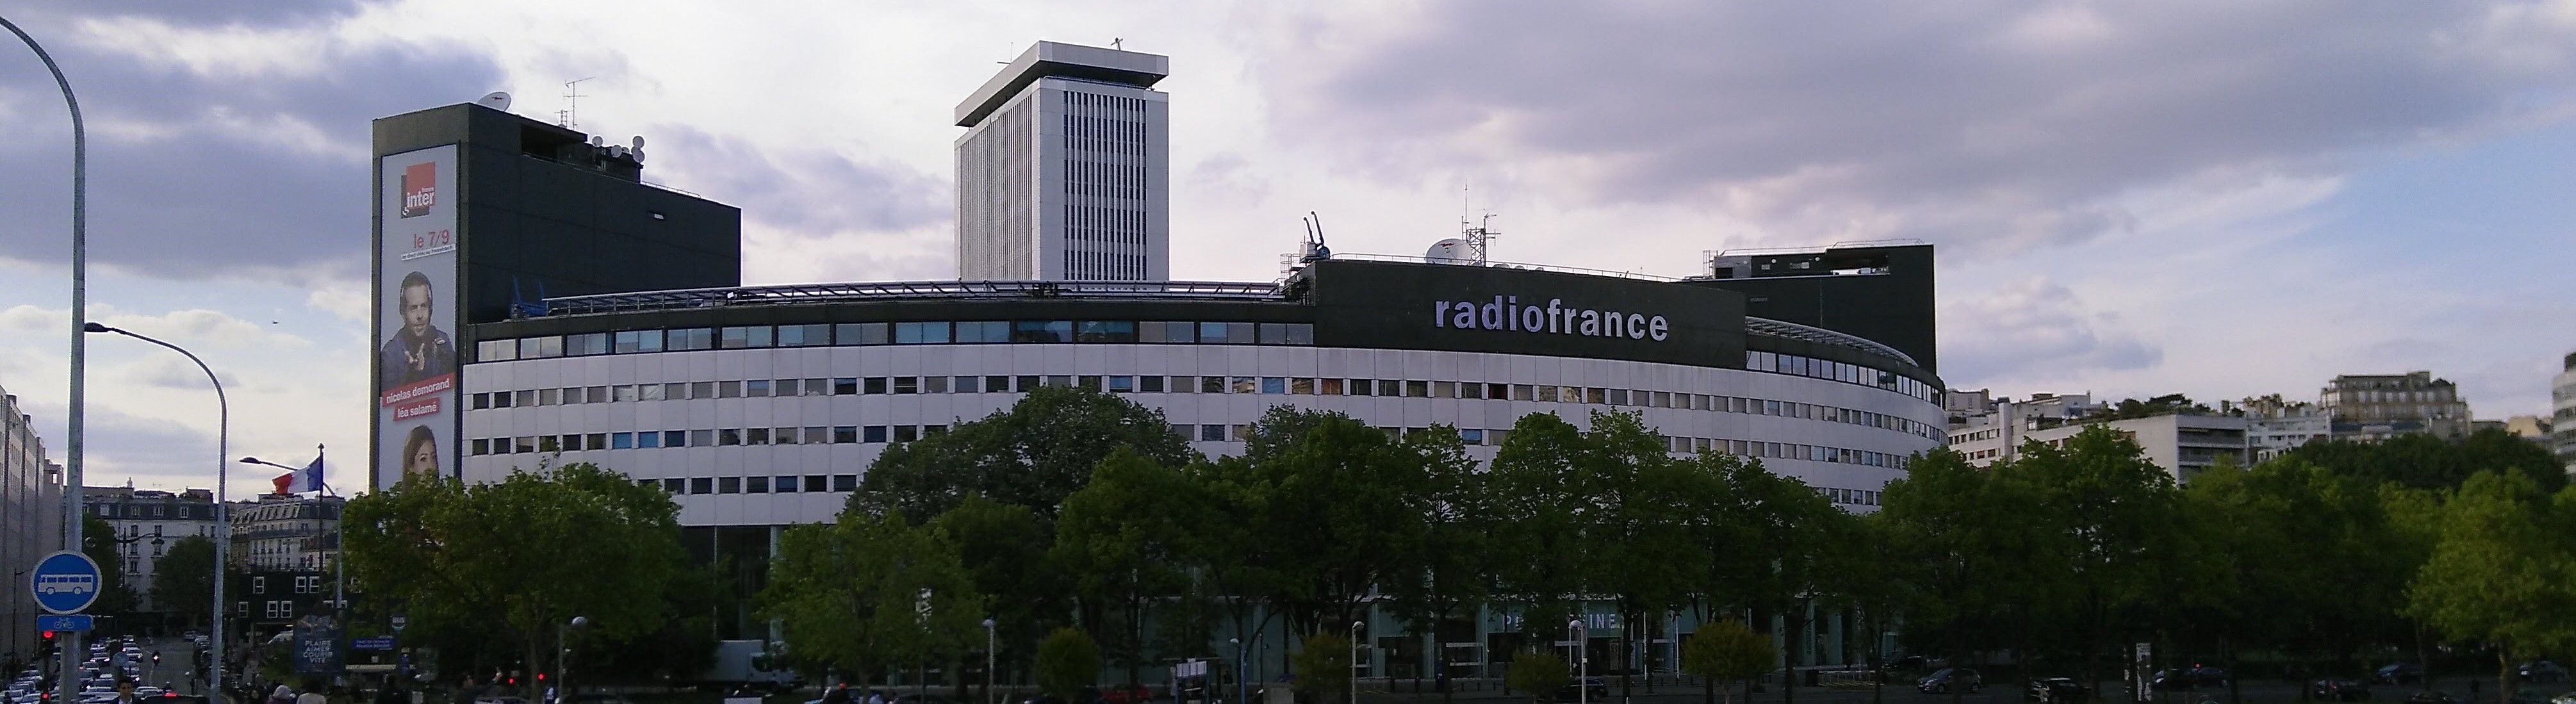 Vue sur le bâtiment de Radio France en mai 2018, photo prise par Andreas Villiger